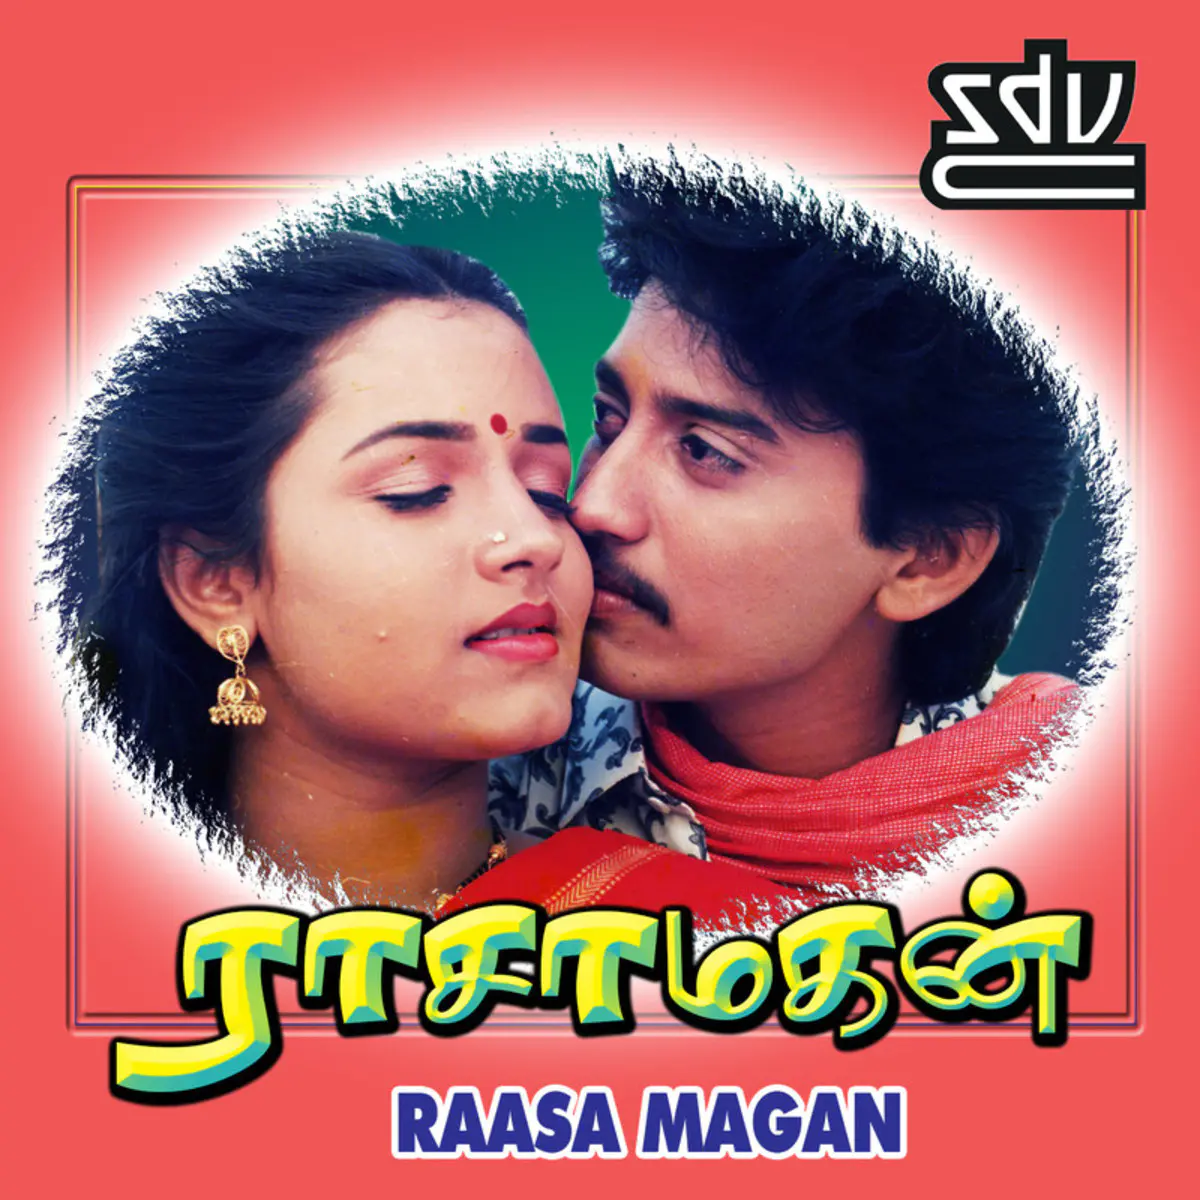 Raasa Magan Songs Download: Raasa Magan MP3 Tamil Songs Online Free on  Gaana.com